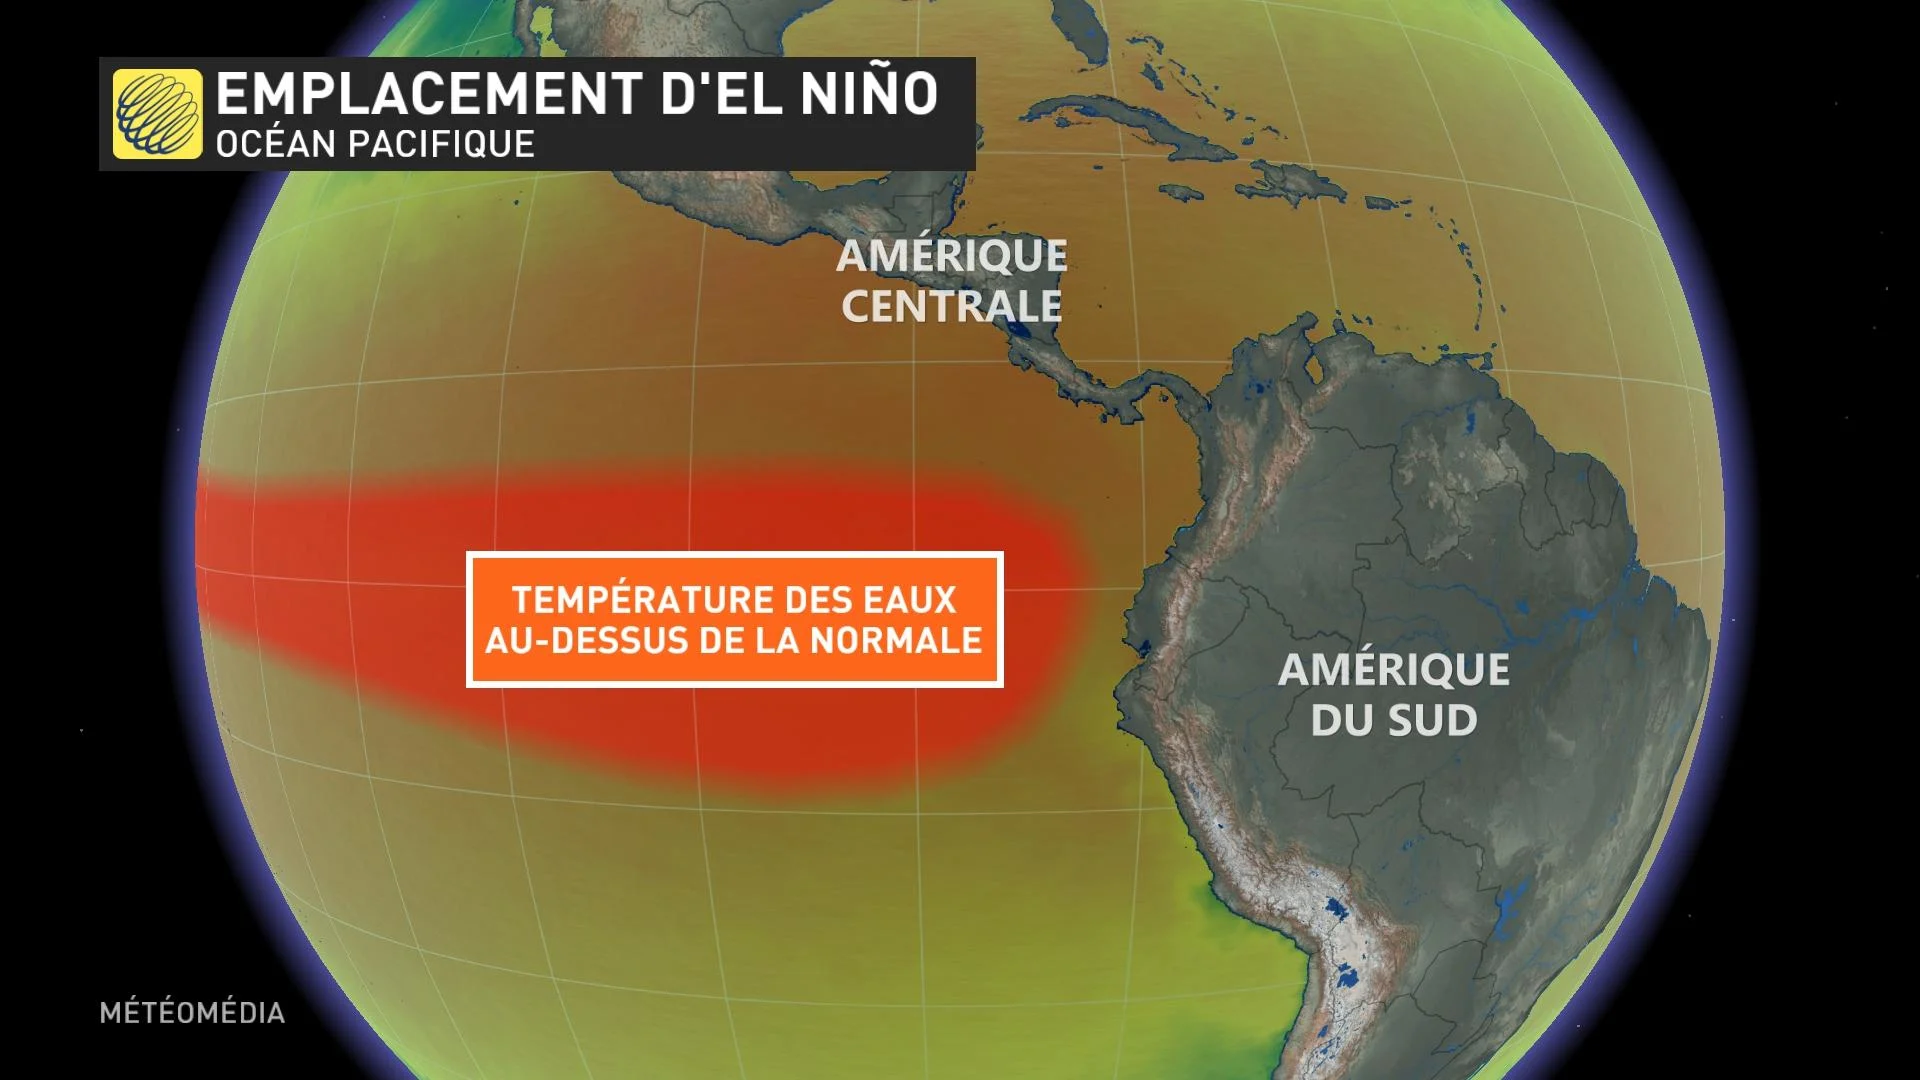 VMET21 El Nino